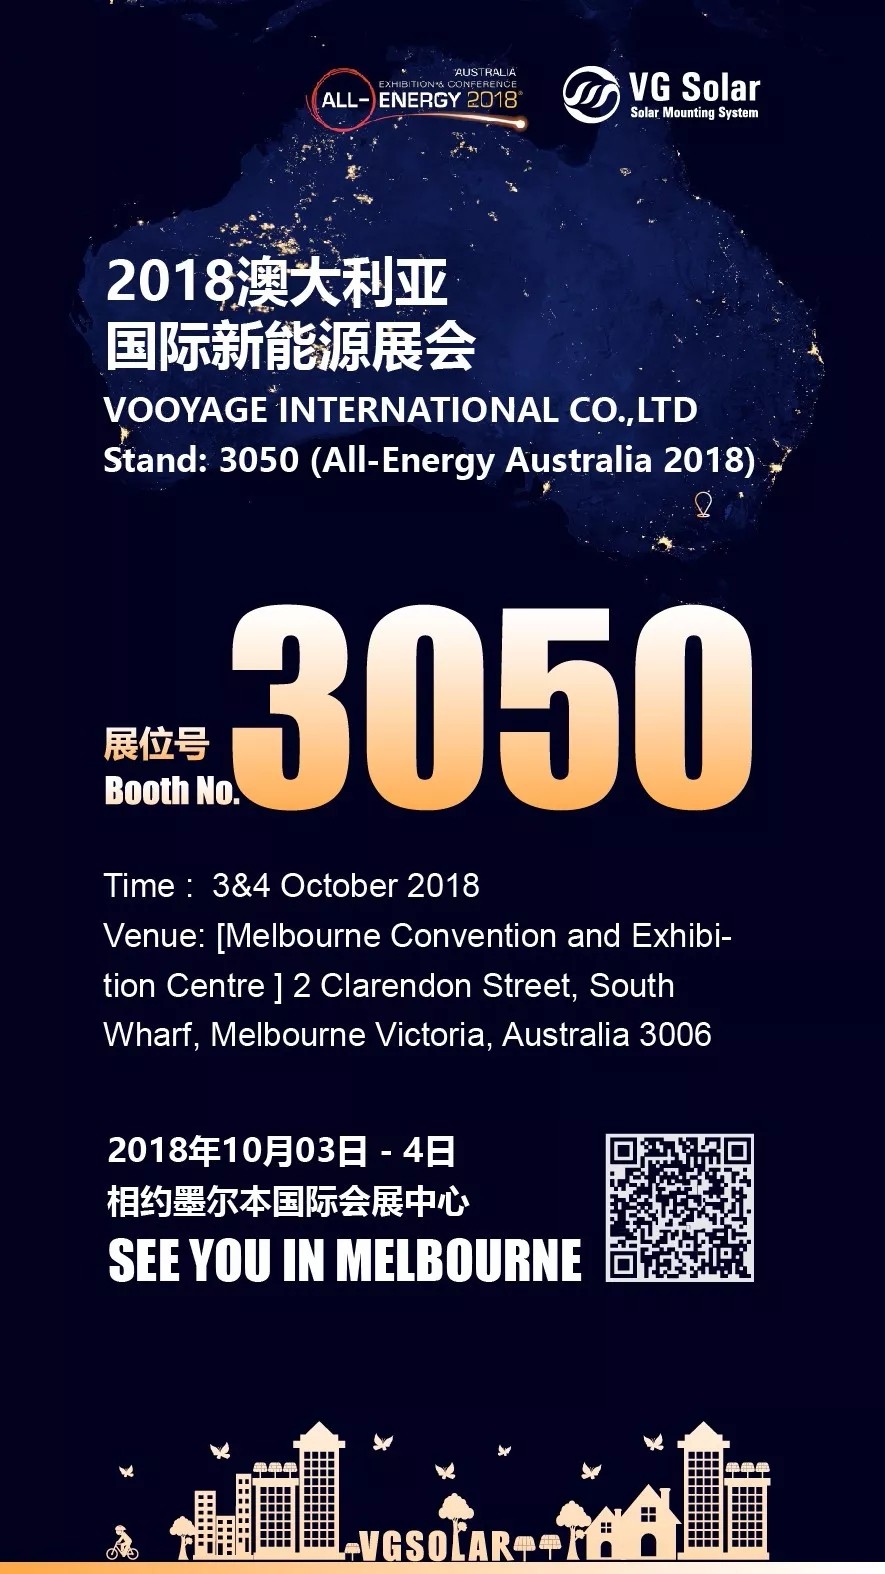 All-Energy Australia 2018,3&4 October 2018,VG Solar